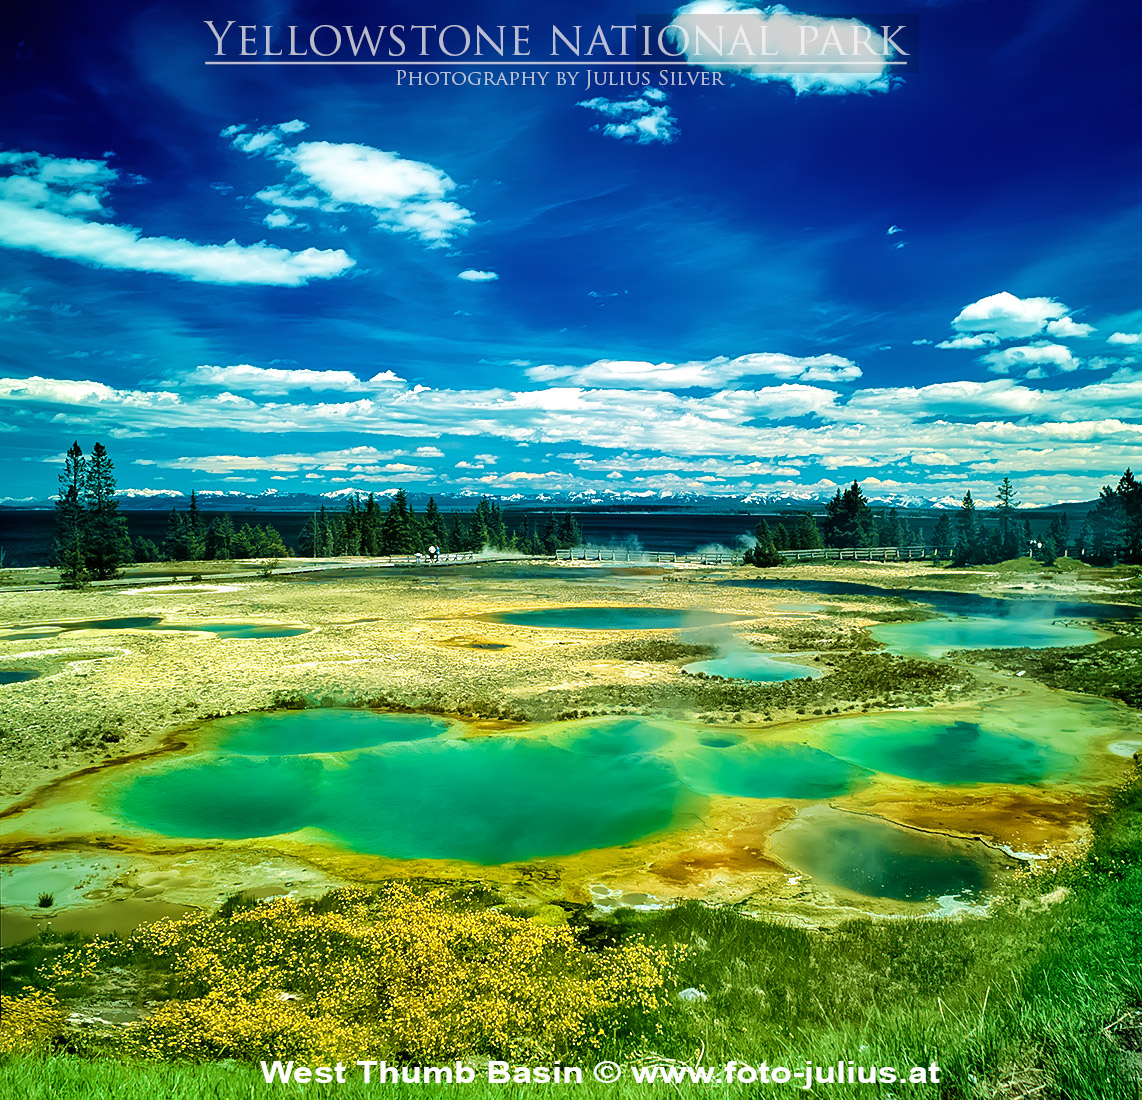 y138a_West_Thumb_Basin_Yellowstone.jpg, 632kB